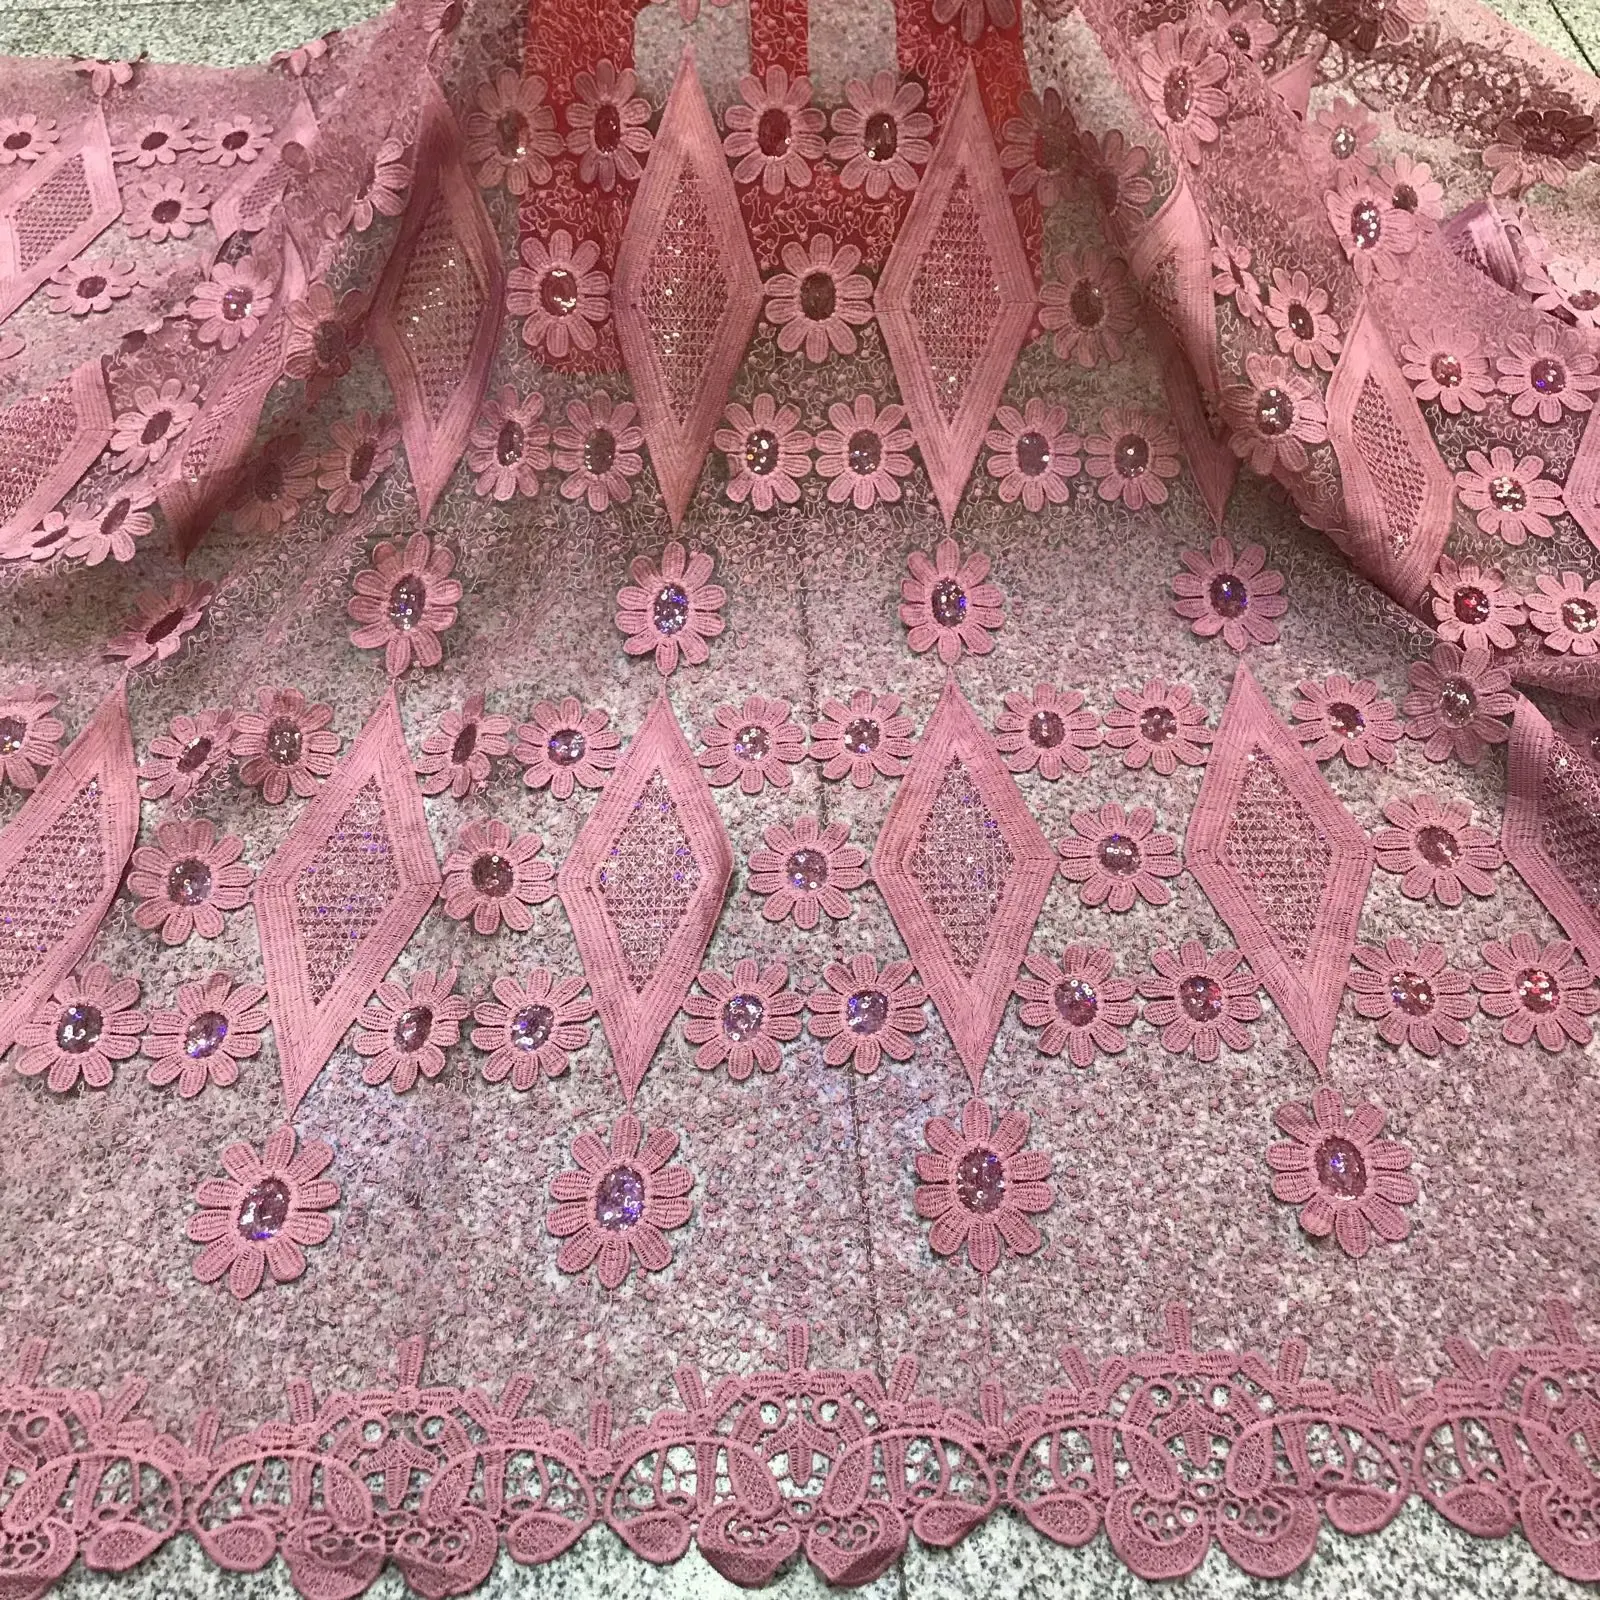 BEAUTIFICAL Африканское платье Французский кружевной ткани материал 5 ярдов Новое поступление вышивка тюль сетка кружева в нигерийском стиле ML5N644